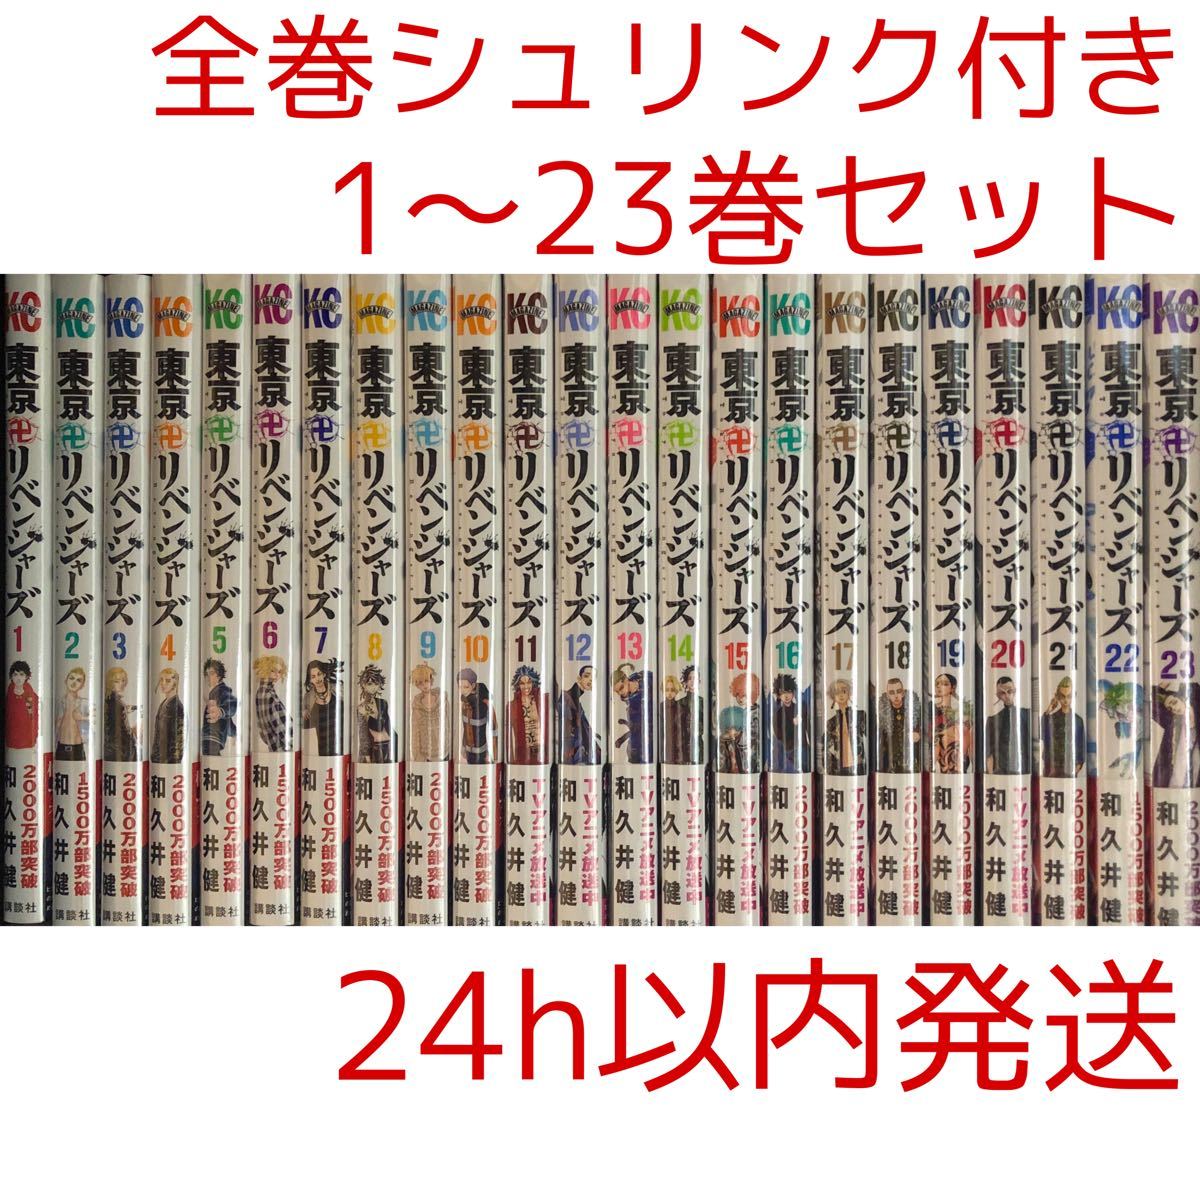 東京リベンジャーズ1〜23巻セット - 全巻セット